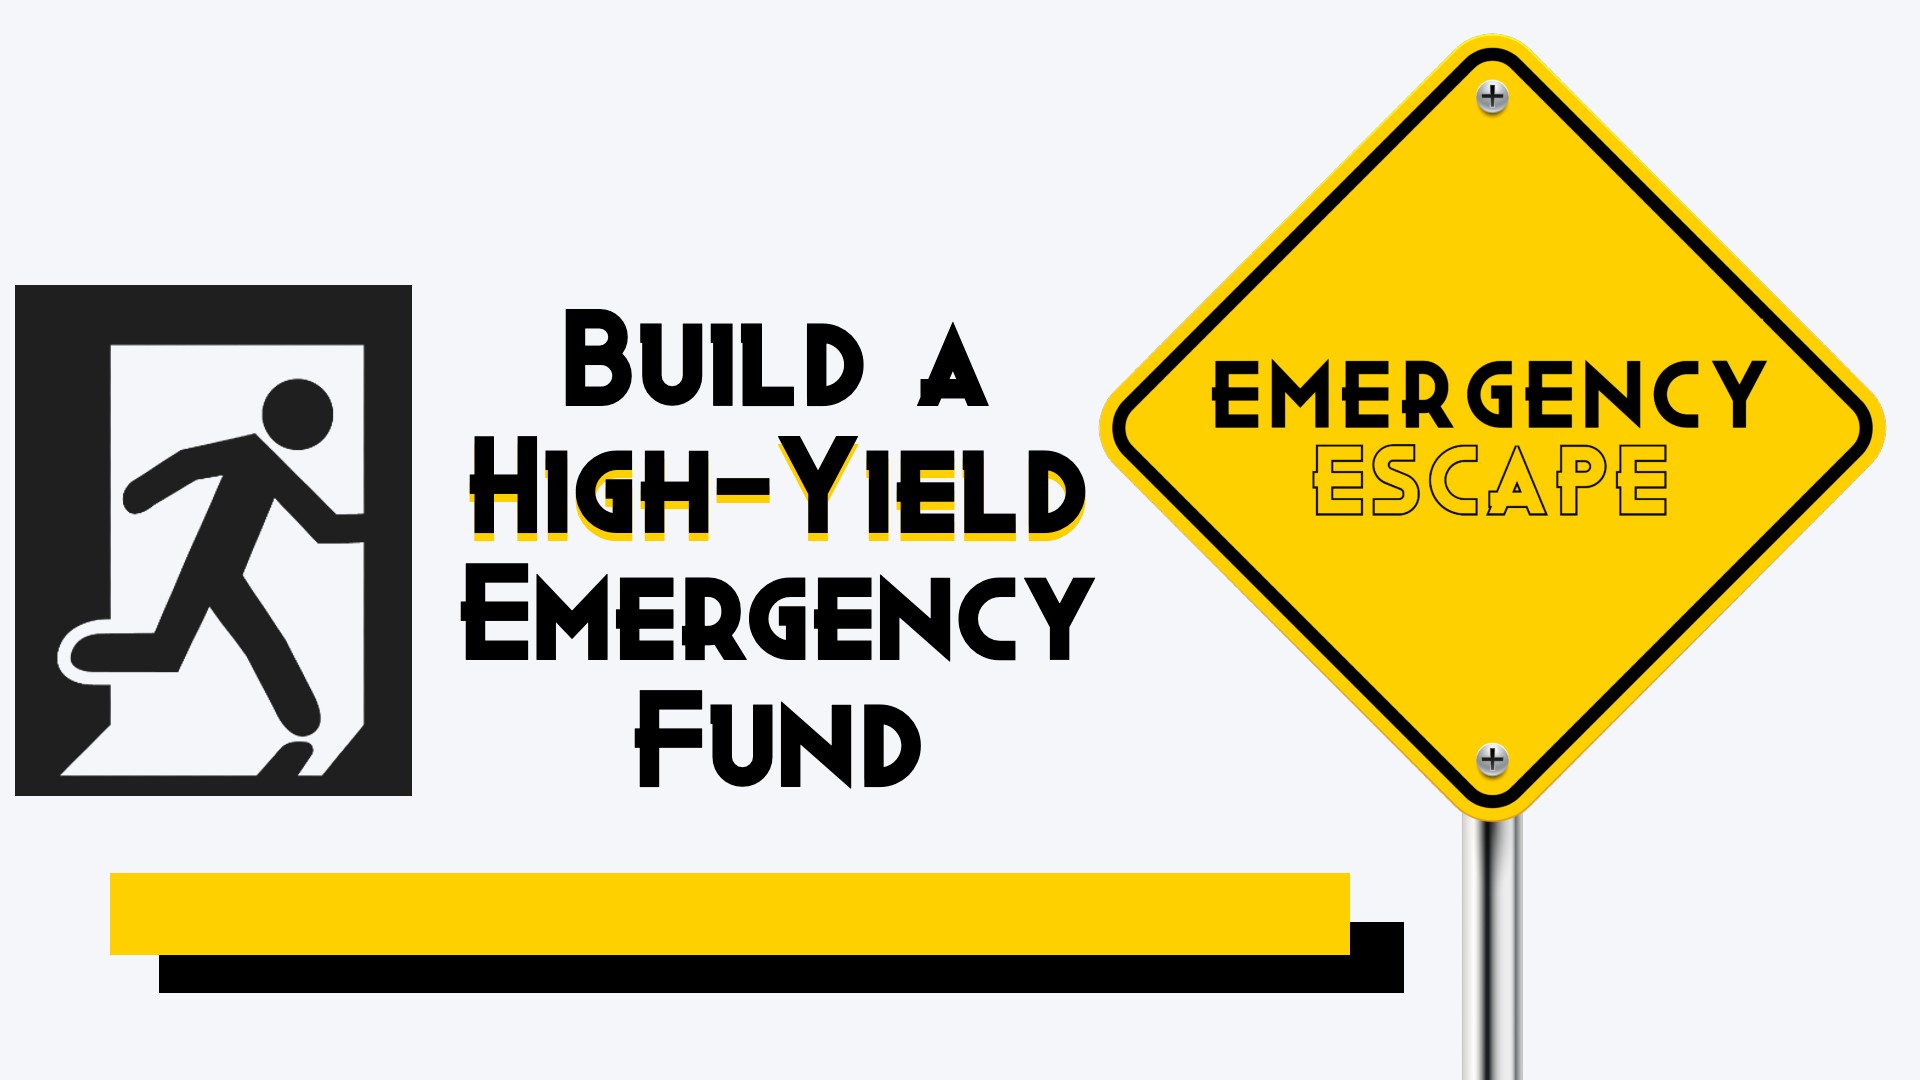 Emergency Escape: Build a High-Yield Emergency Fund